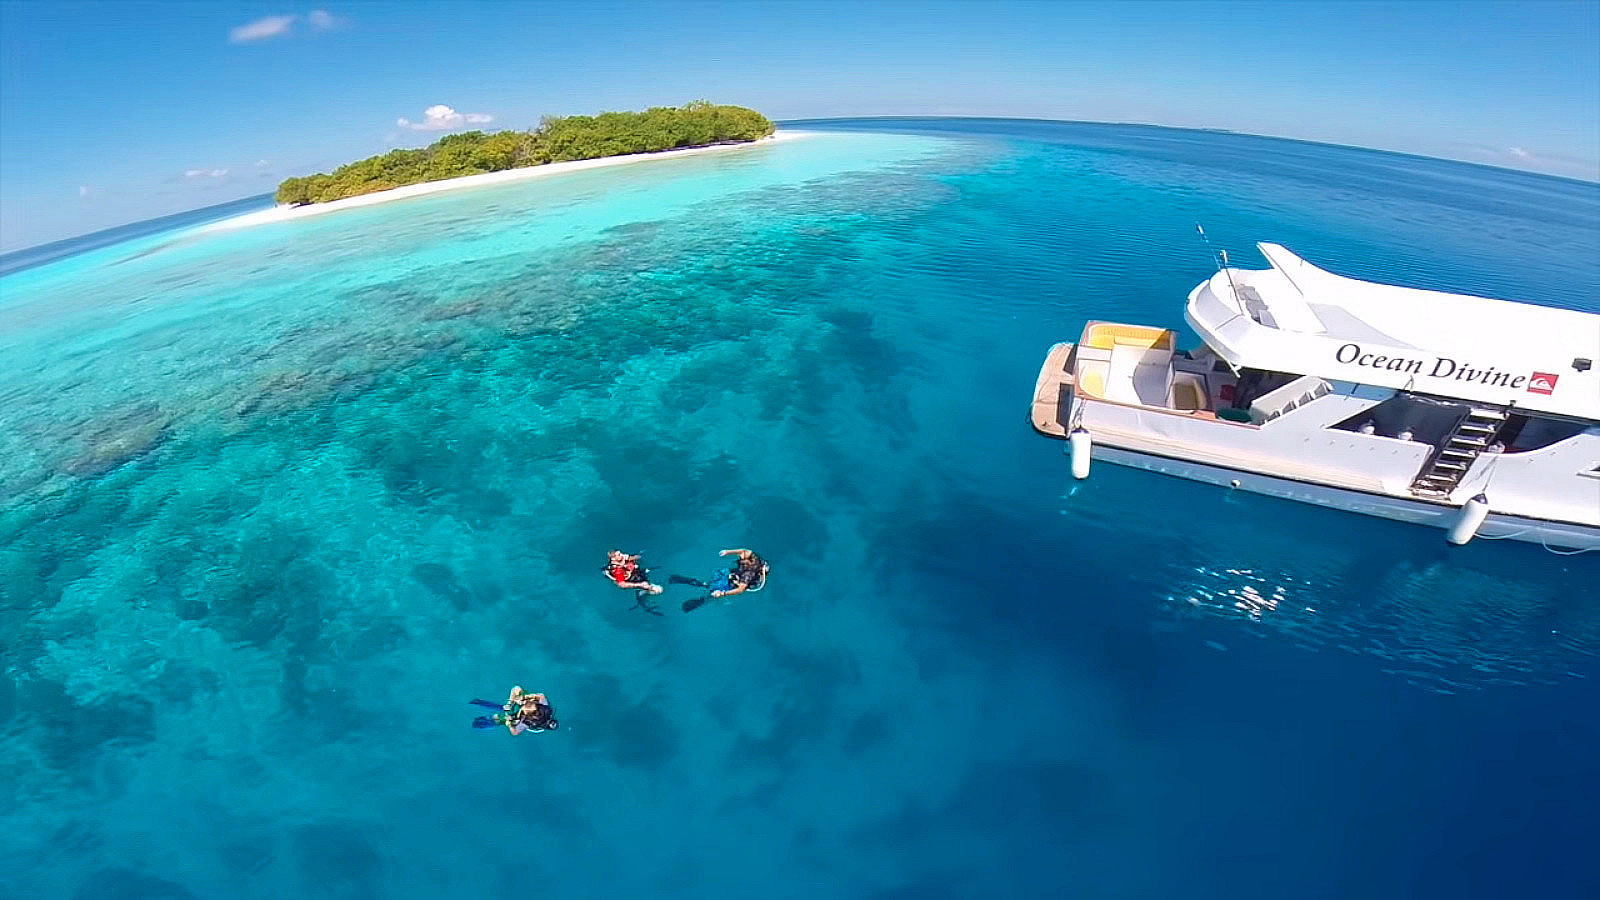 Liveaboards in Maldives,dive safaris, Liveaboard Charters, Maldives Scuba Diving, The Ultimate Guide to Diving in Maldives, dive, Liveaboard, luxury, جزر المالديف ، الخريطة ، الفندق ، الفنادق ، الإقامة ، الفيلات ، الشقق ، السياحة ، السفر ، الجولات ، الإجازات ، مطار جزر المالديف